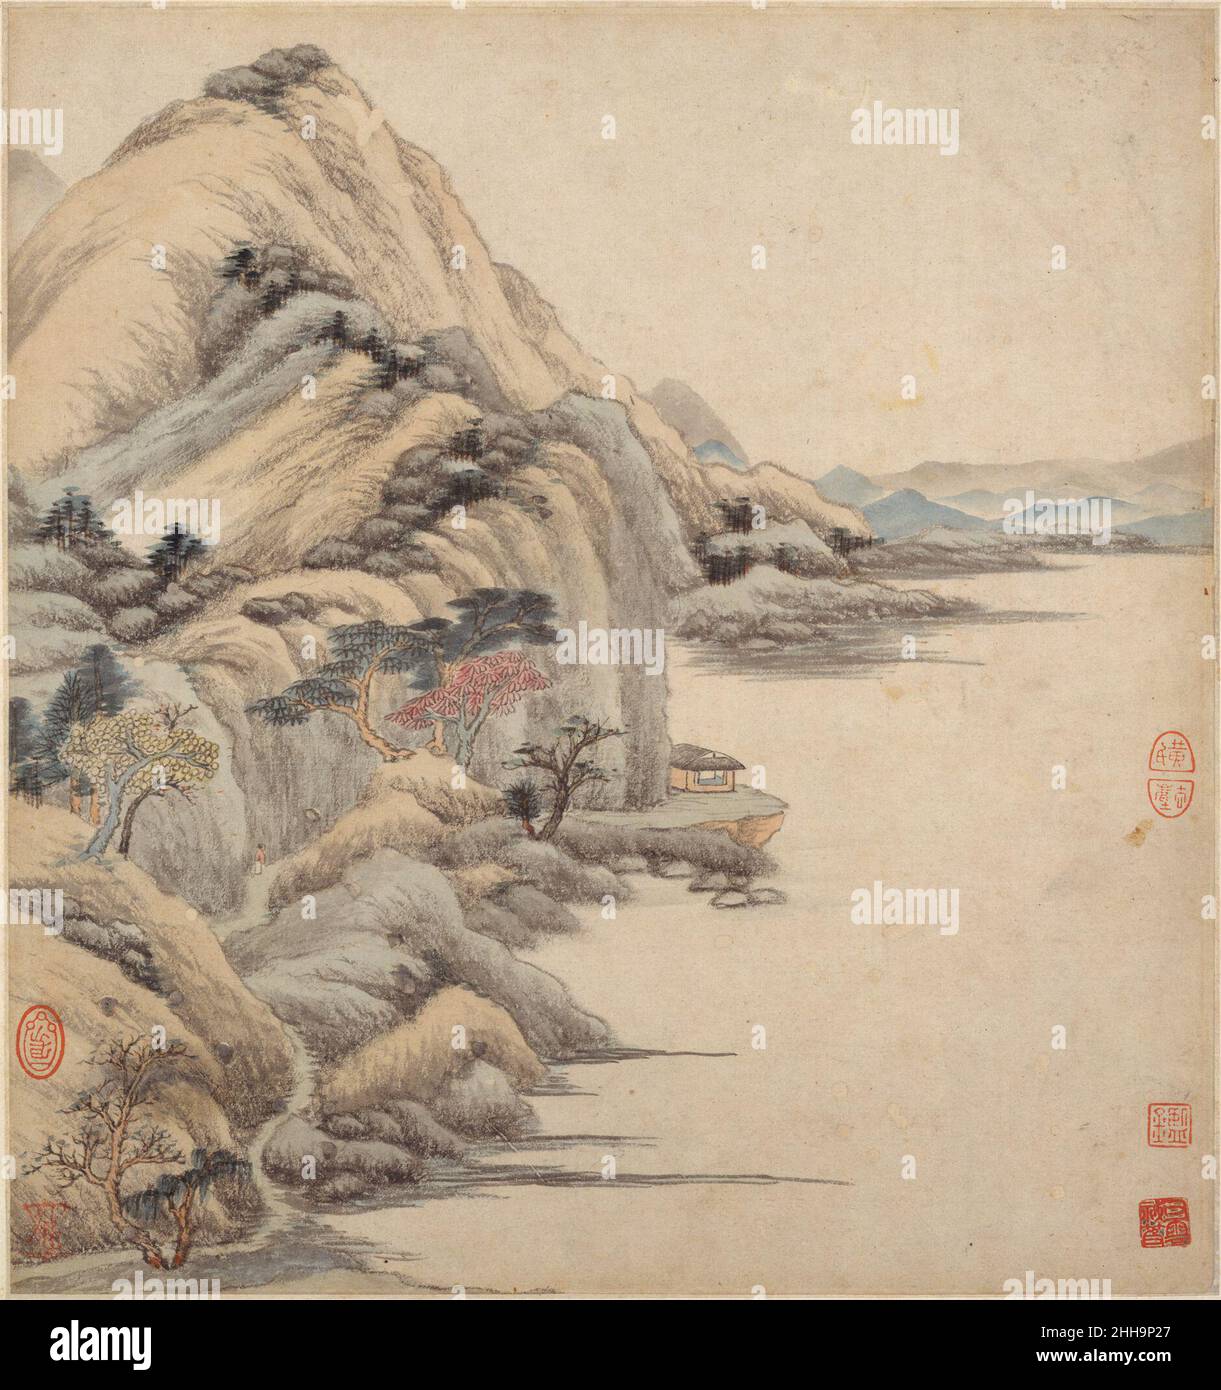 Landschaften im Stil alter Meister 17th. Jahrhundert Wang Jian die chinesischen Gemälde von Wang Jian veranschaulichen die Vision eines traditionsreichen Mannes. Als Mitglied der gebildeten Elite genoss Wang Zugang zu den zahlreichen Privatsammlungen der Region und erbte eine reiche Sammlung alter Meister von seinem Großvater Wang Shizhen (1526–1590). Dieses Wissen aus erster Hand über vergangene Meisterwerke inspirierte Wang dazu, dem Beispiel von Dong Qichang (1555–1636) zu folgen, indem er eine persönliche künstlerische Synthese durch das sorgfältige Studium 'orthodoxer' Modelle suchte.Dieses Album ist eine virtuose Darstellung von Wang Jians Komma Stockfoto